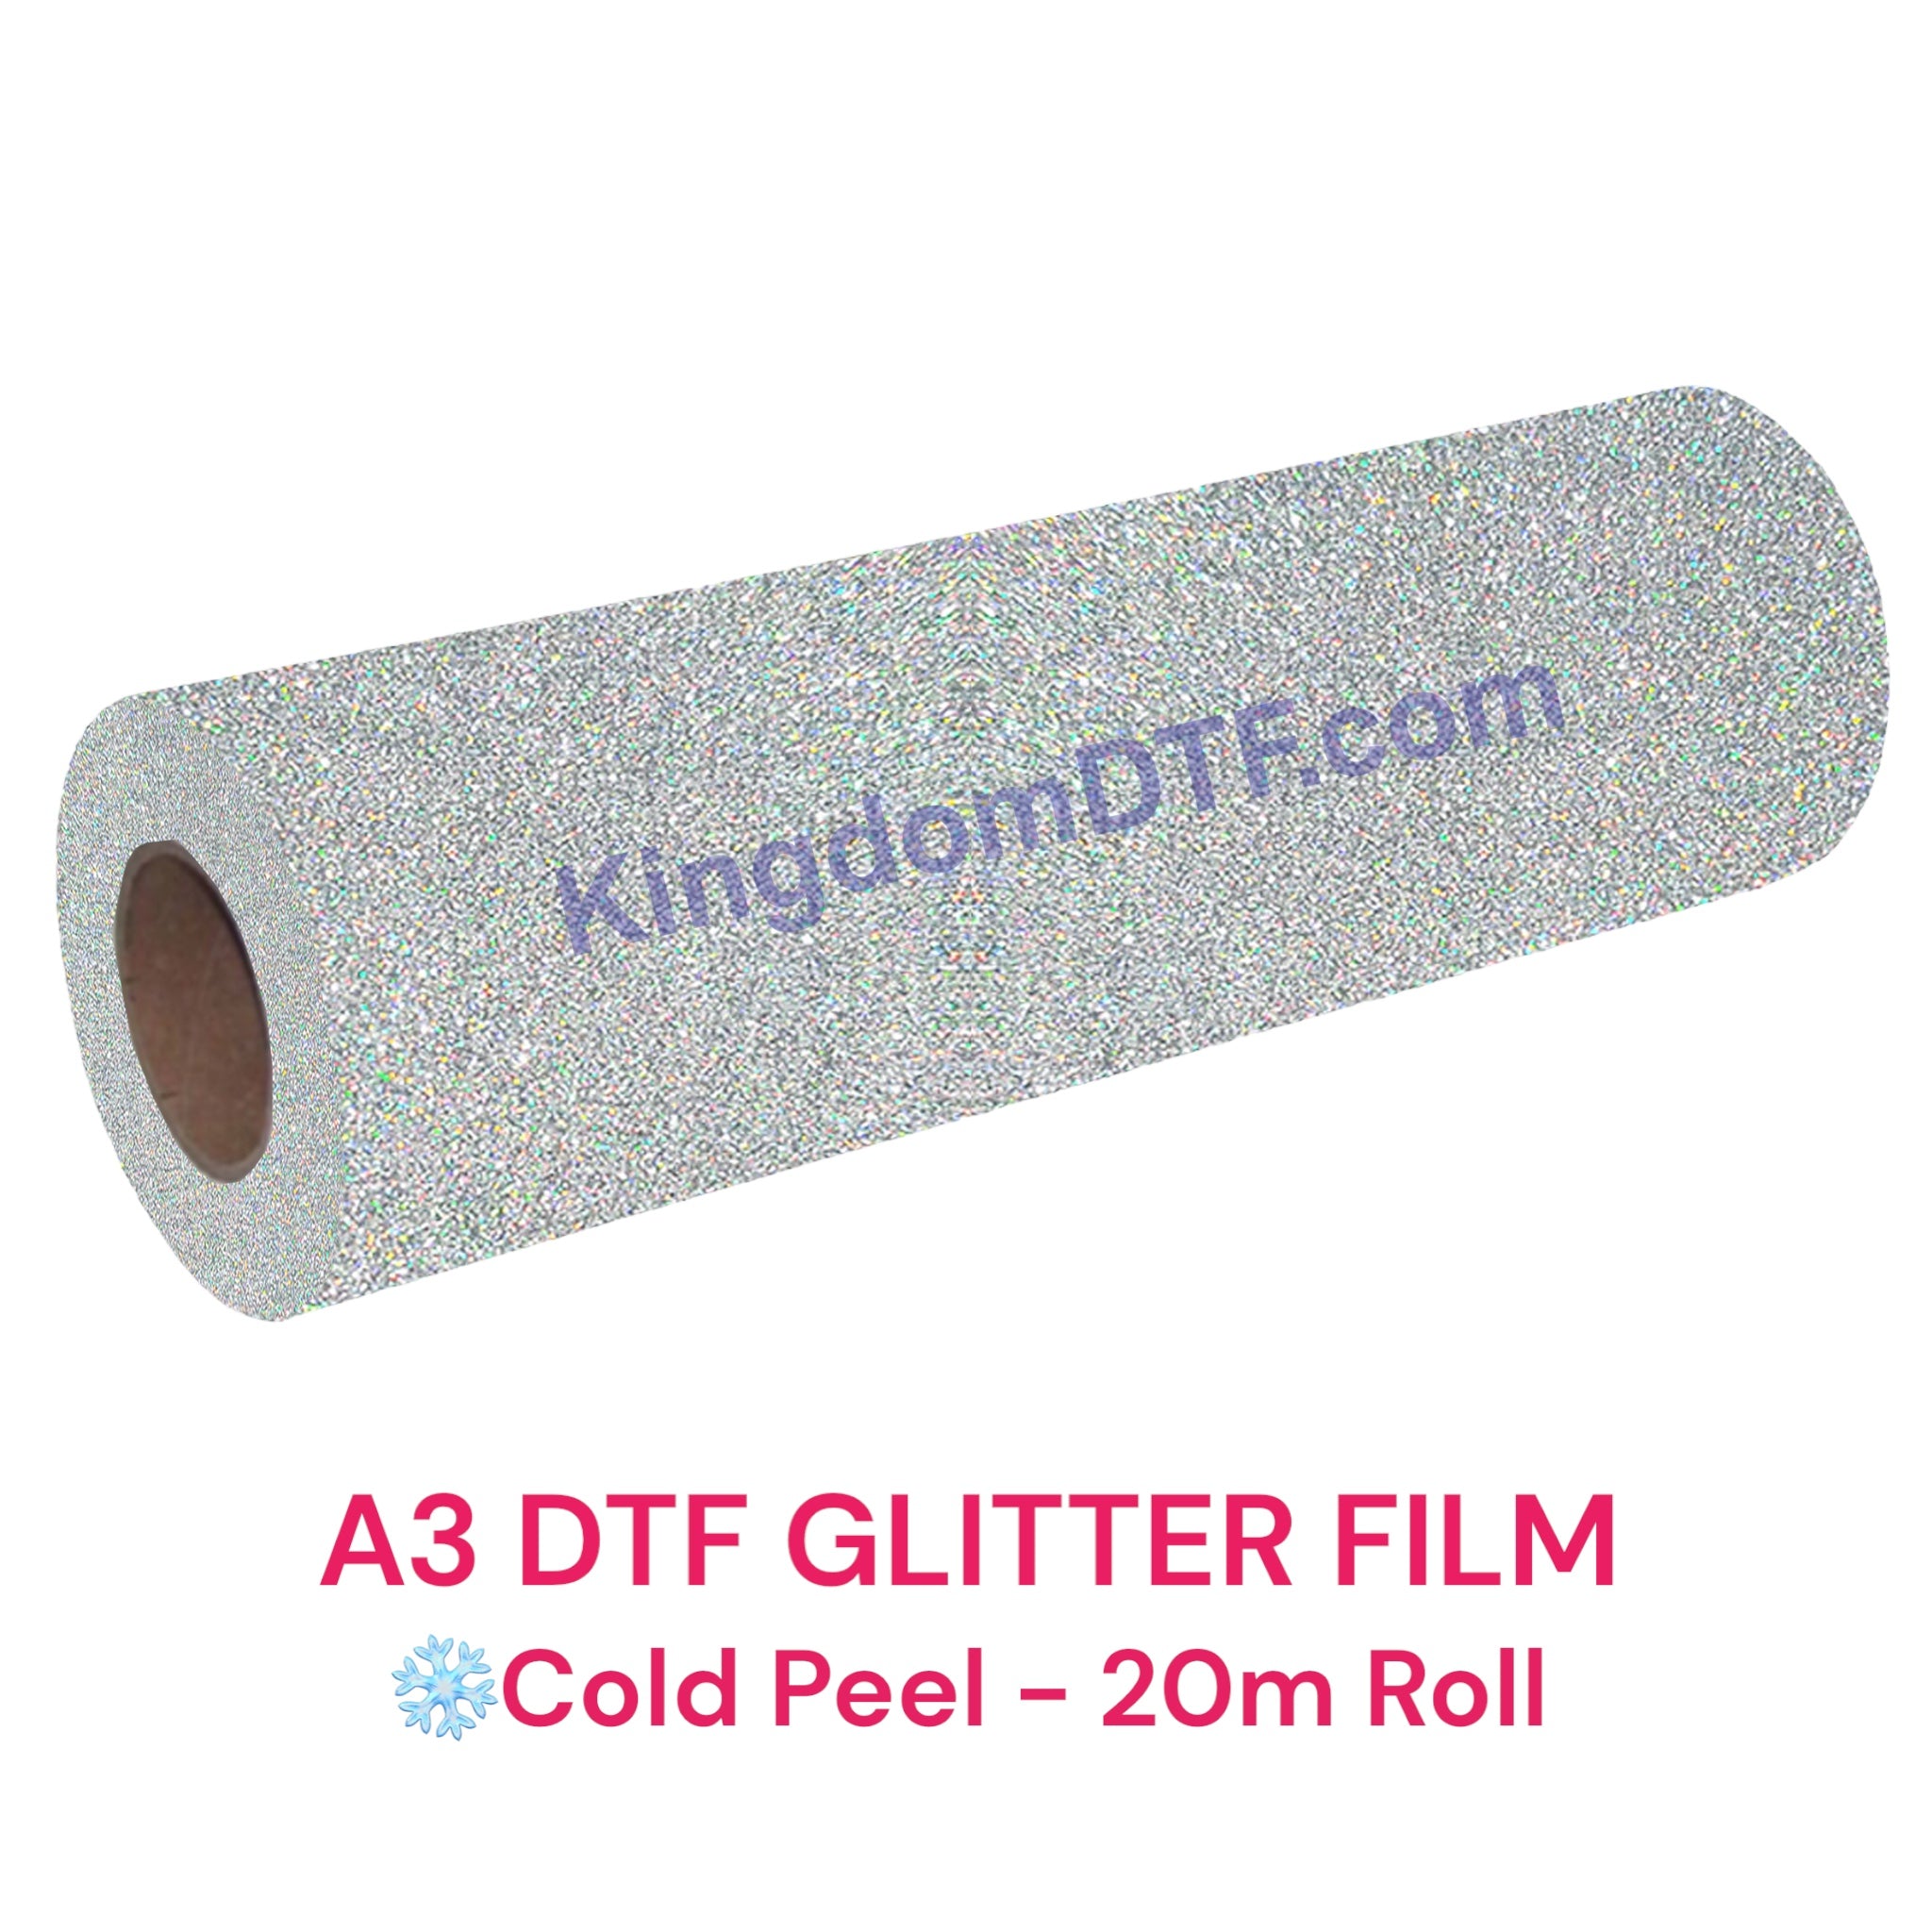 DTF Glitter Film Roll 11.7" x 65' Feet (20m) - Cold Peel (Regular Glitter)